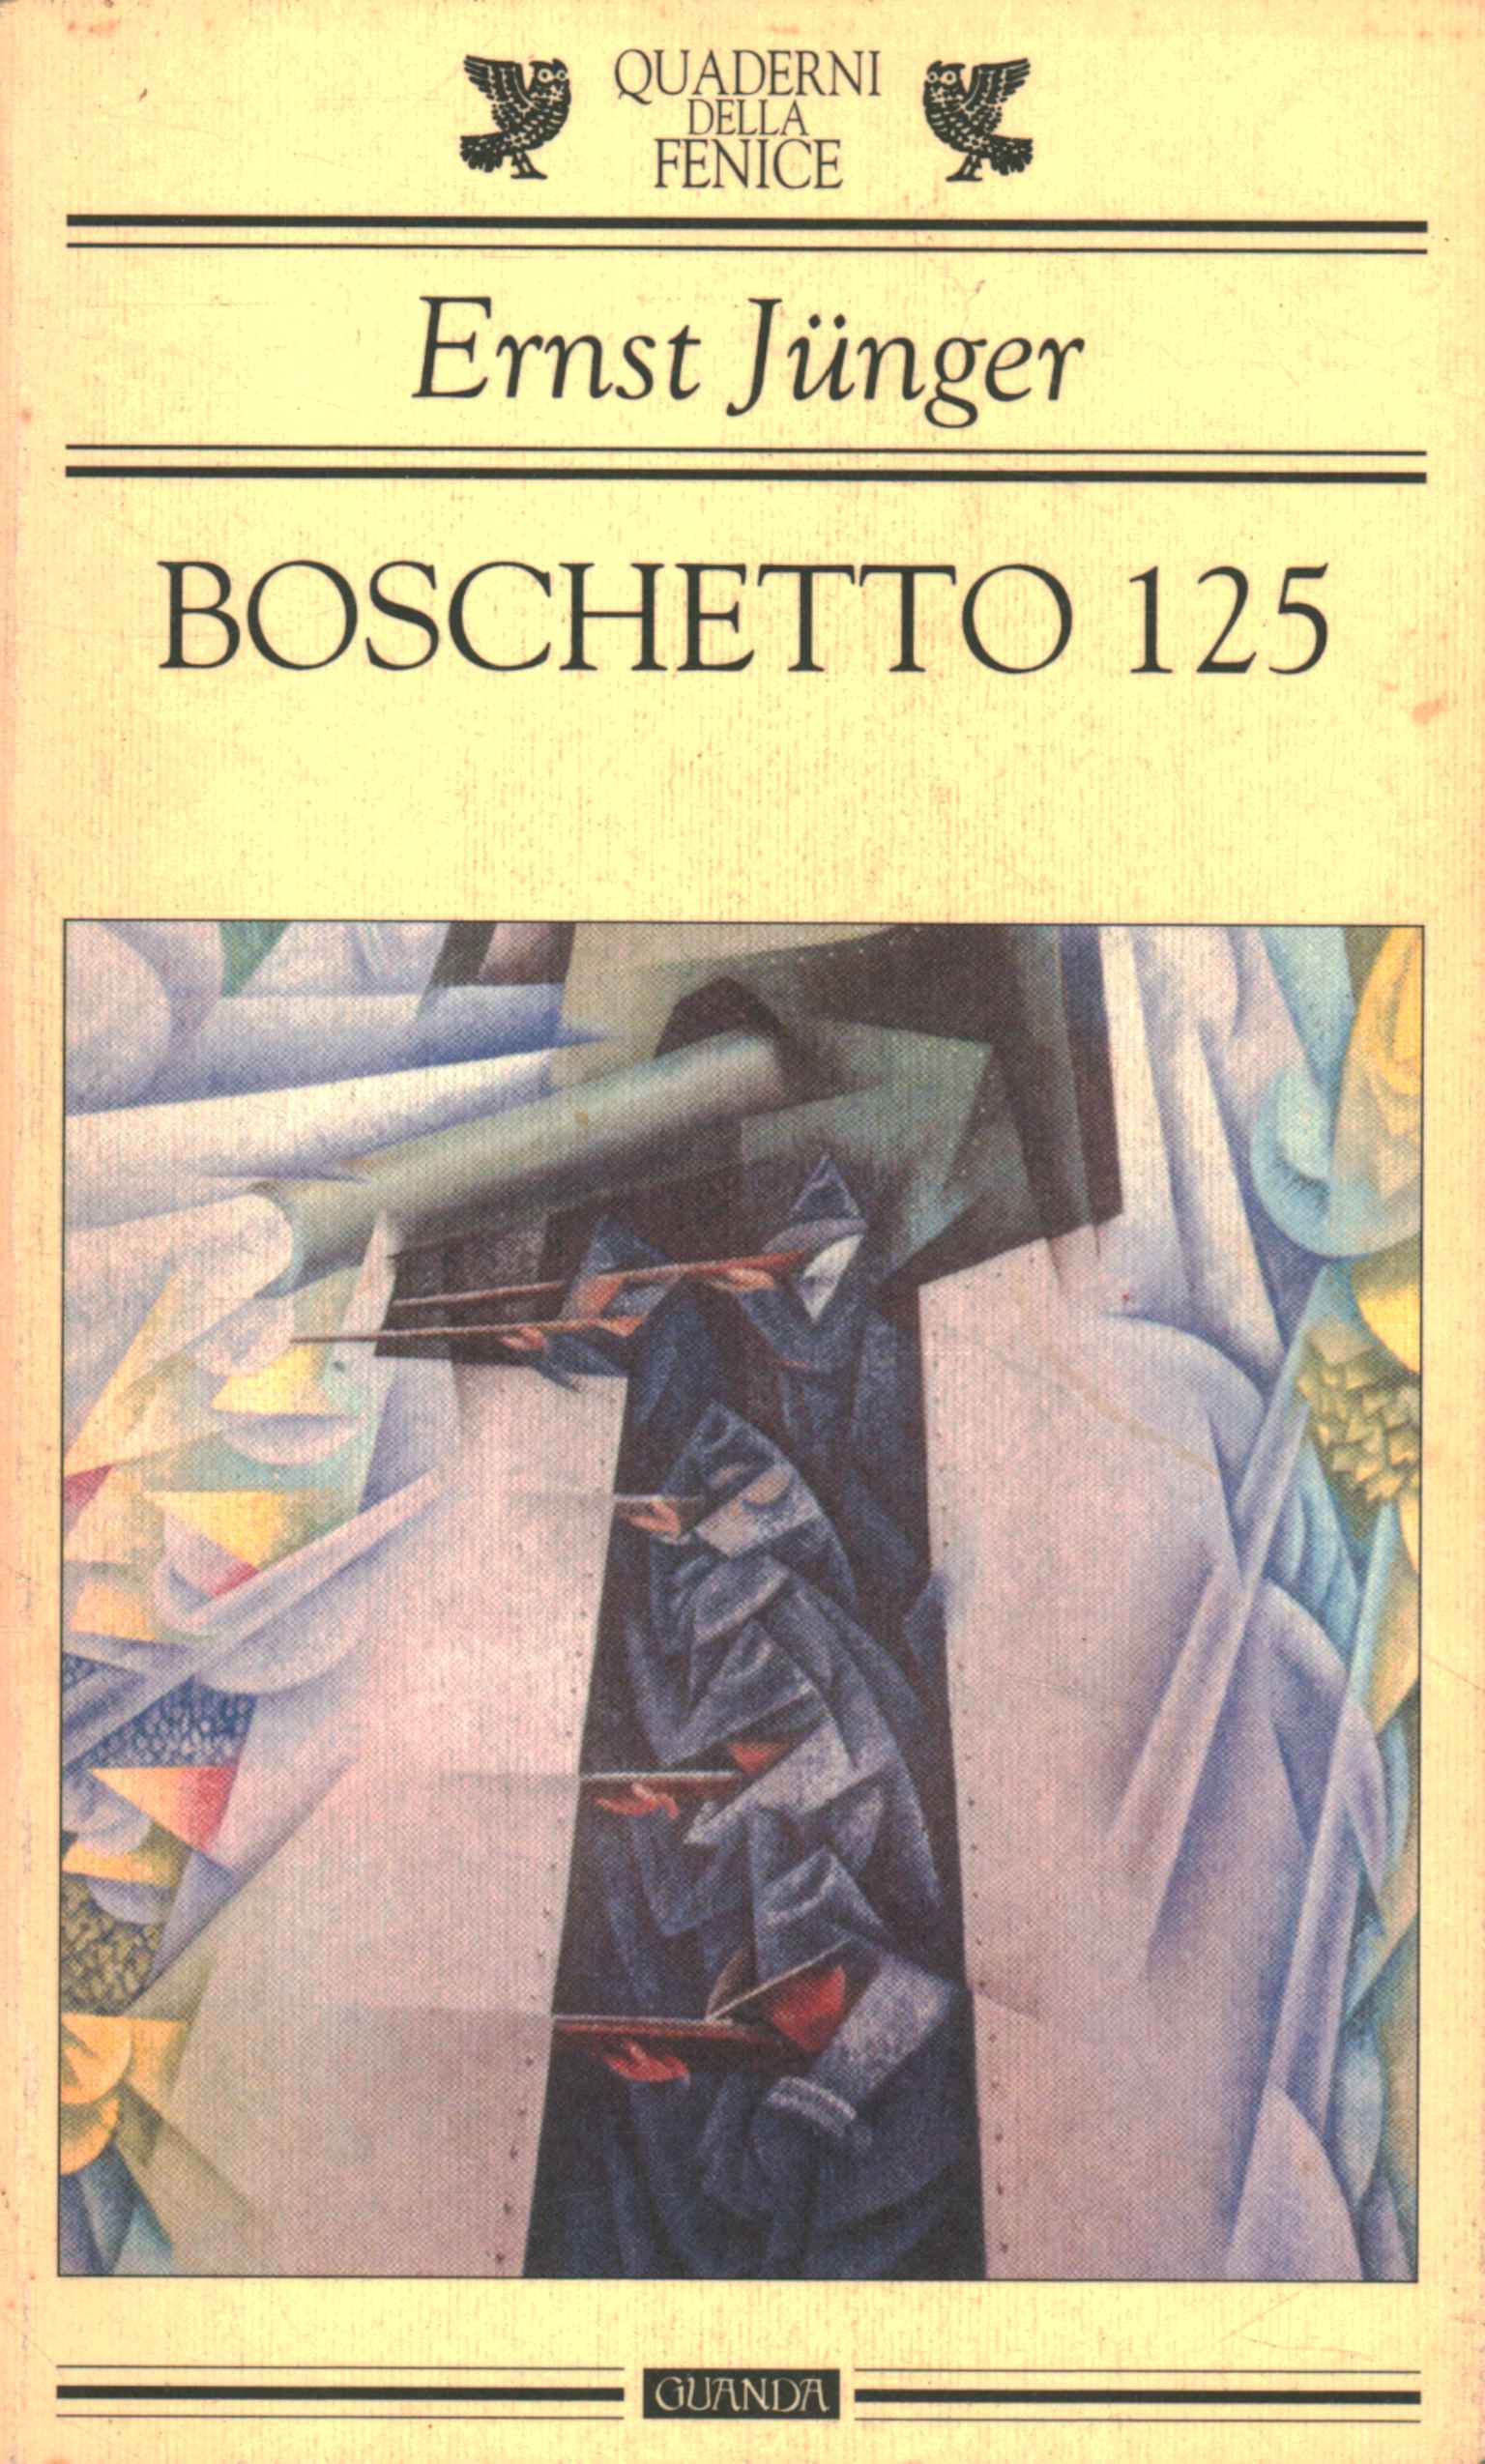 Bosquet 125